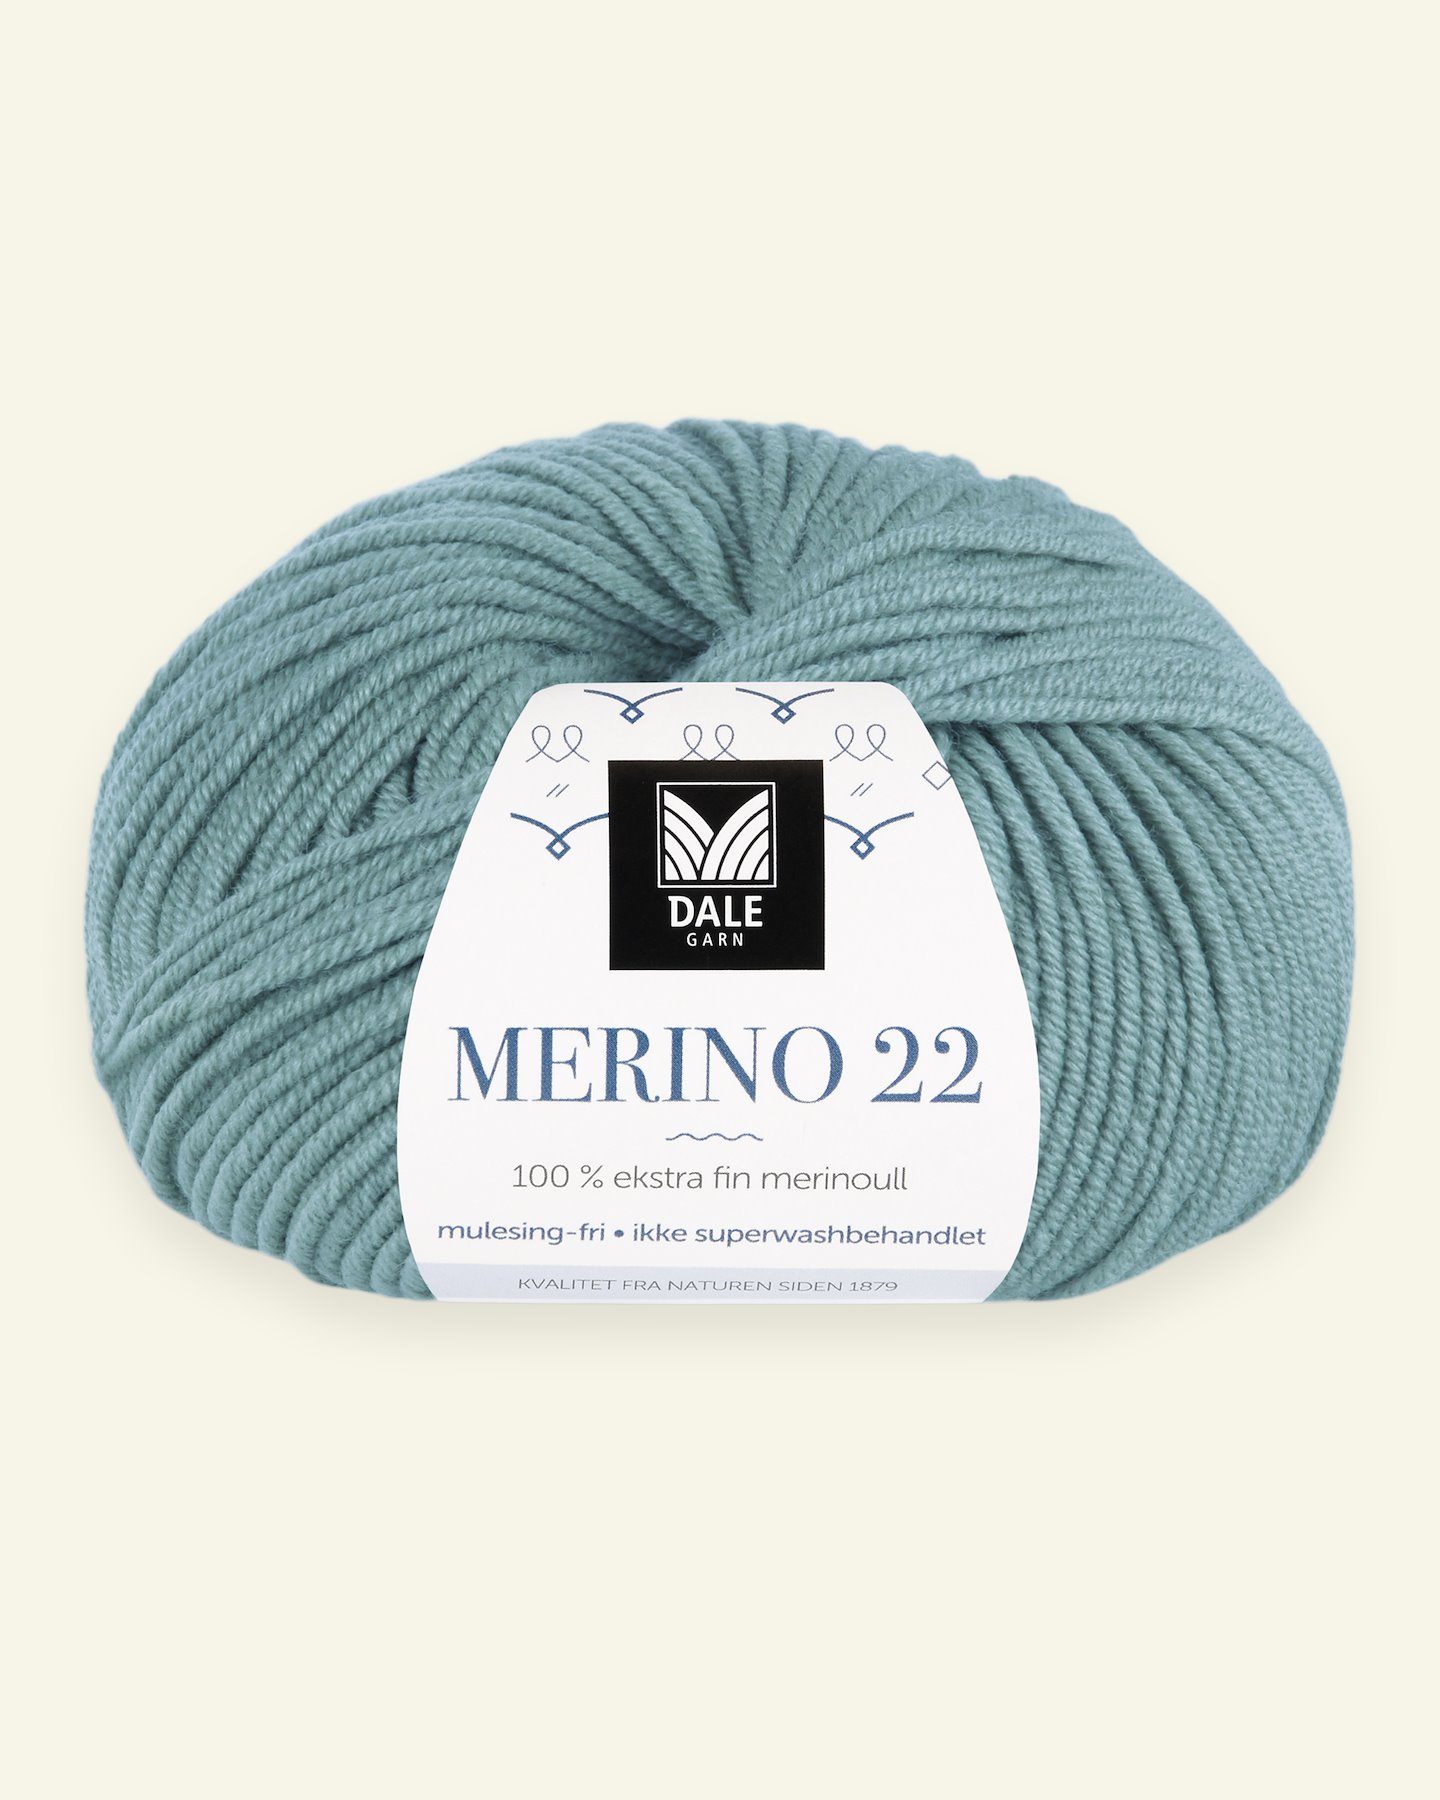 Dale Garn, 100% extra fine merino wool yarn, "Merino 22", aqua 90000376_pack